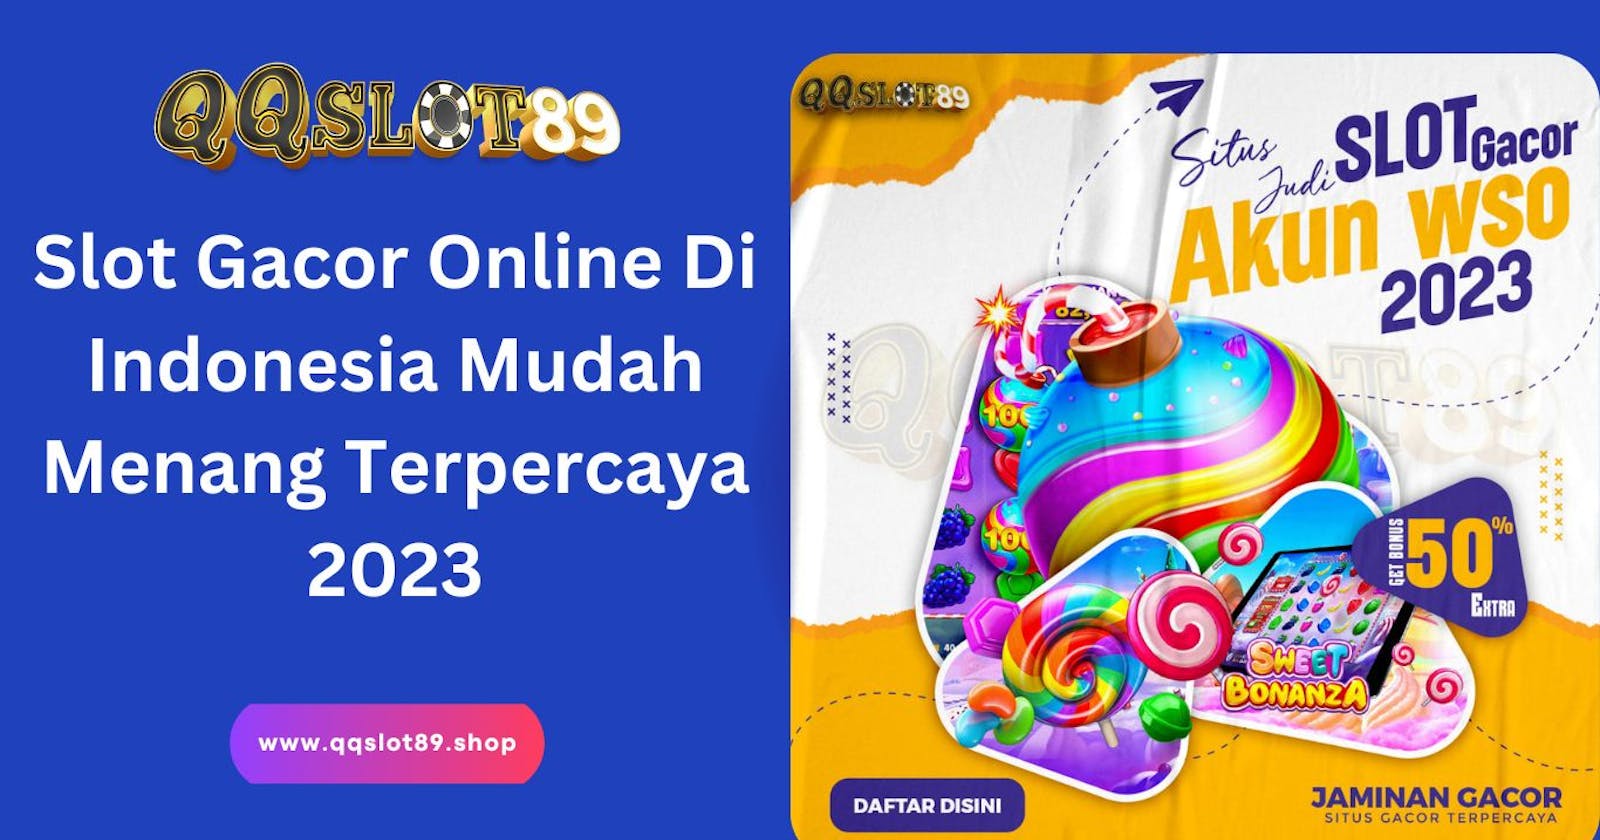 Slot Gacor Online Di Indonesia Mudah Menang Terpercaya 2023